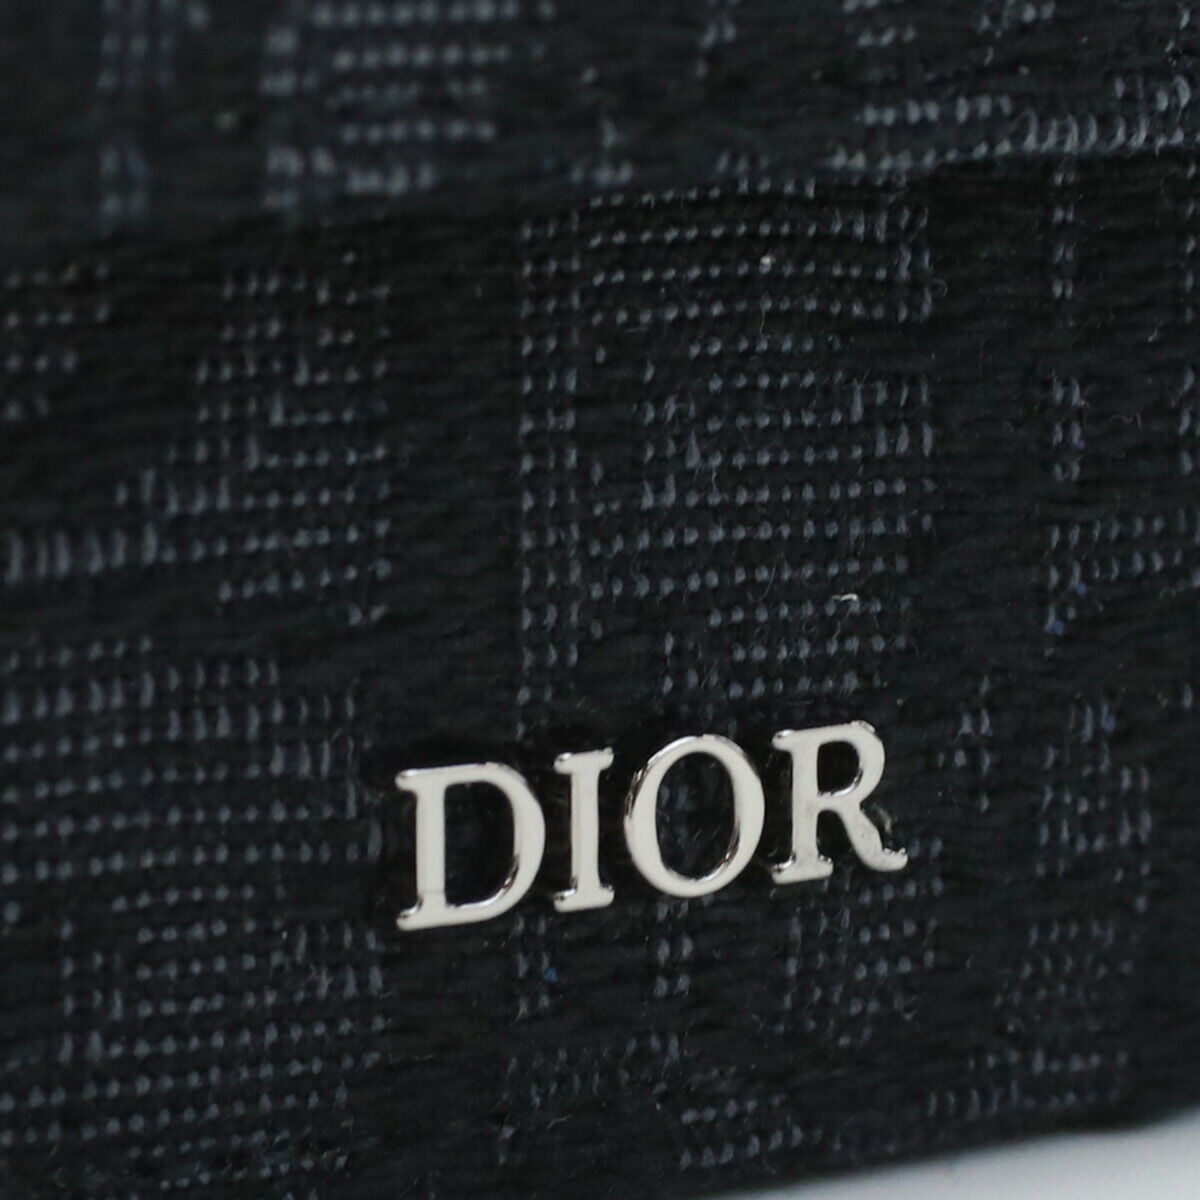 ディオール Christian Dior 三つ折財布小銭入付き 財布 ブランド